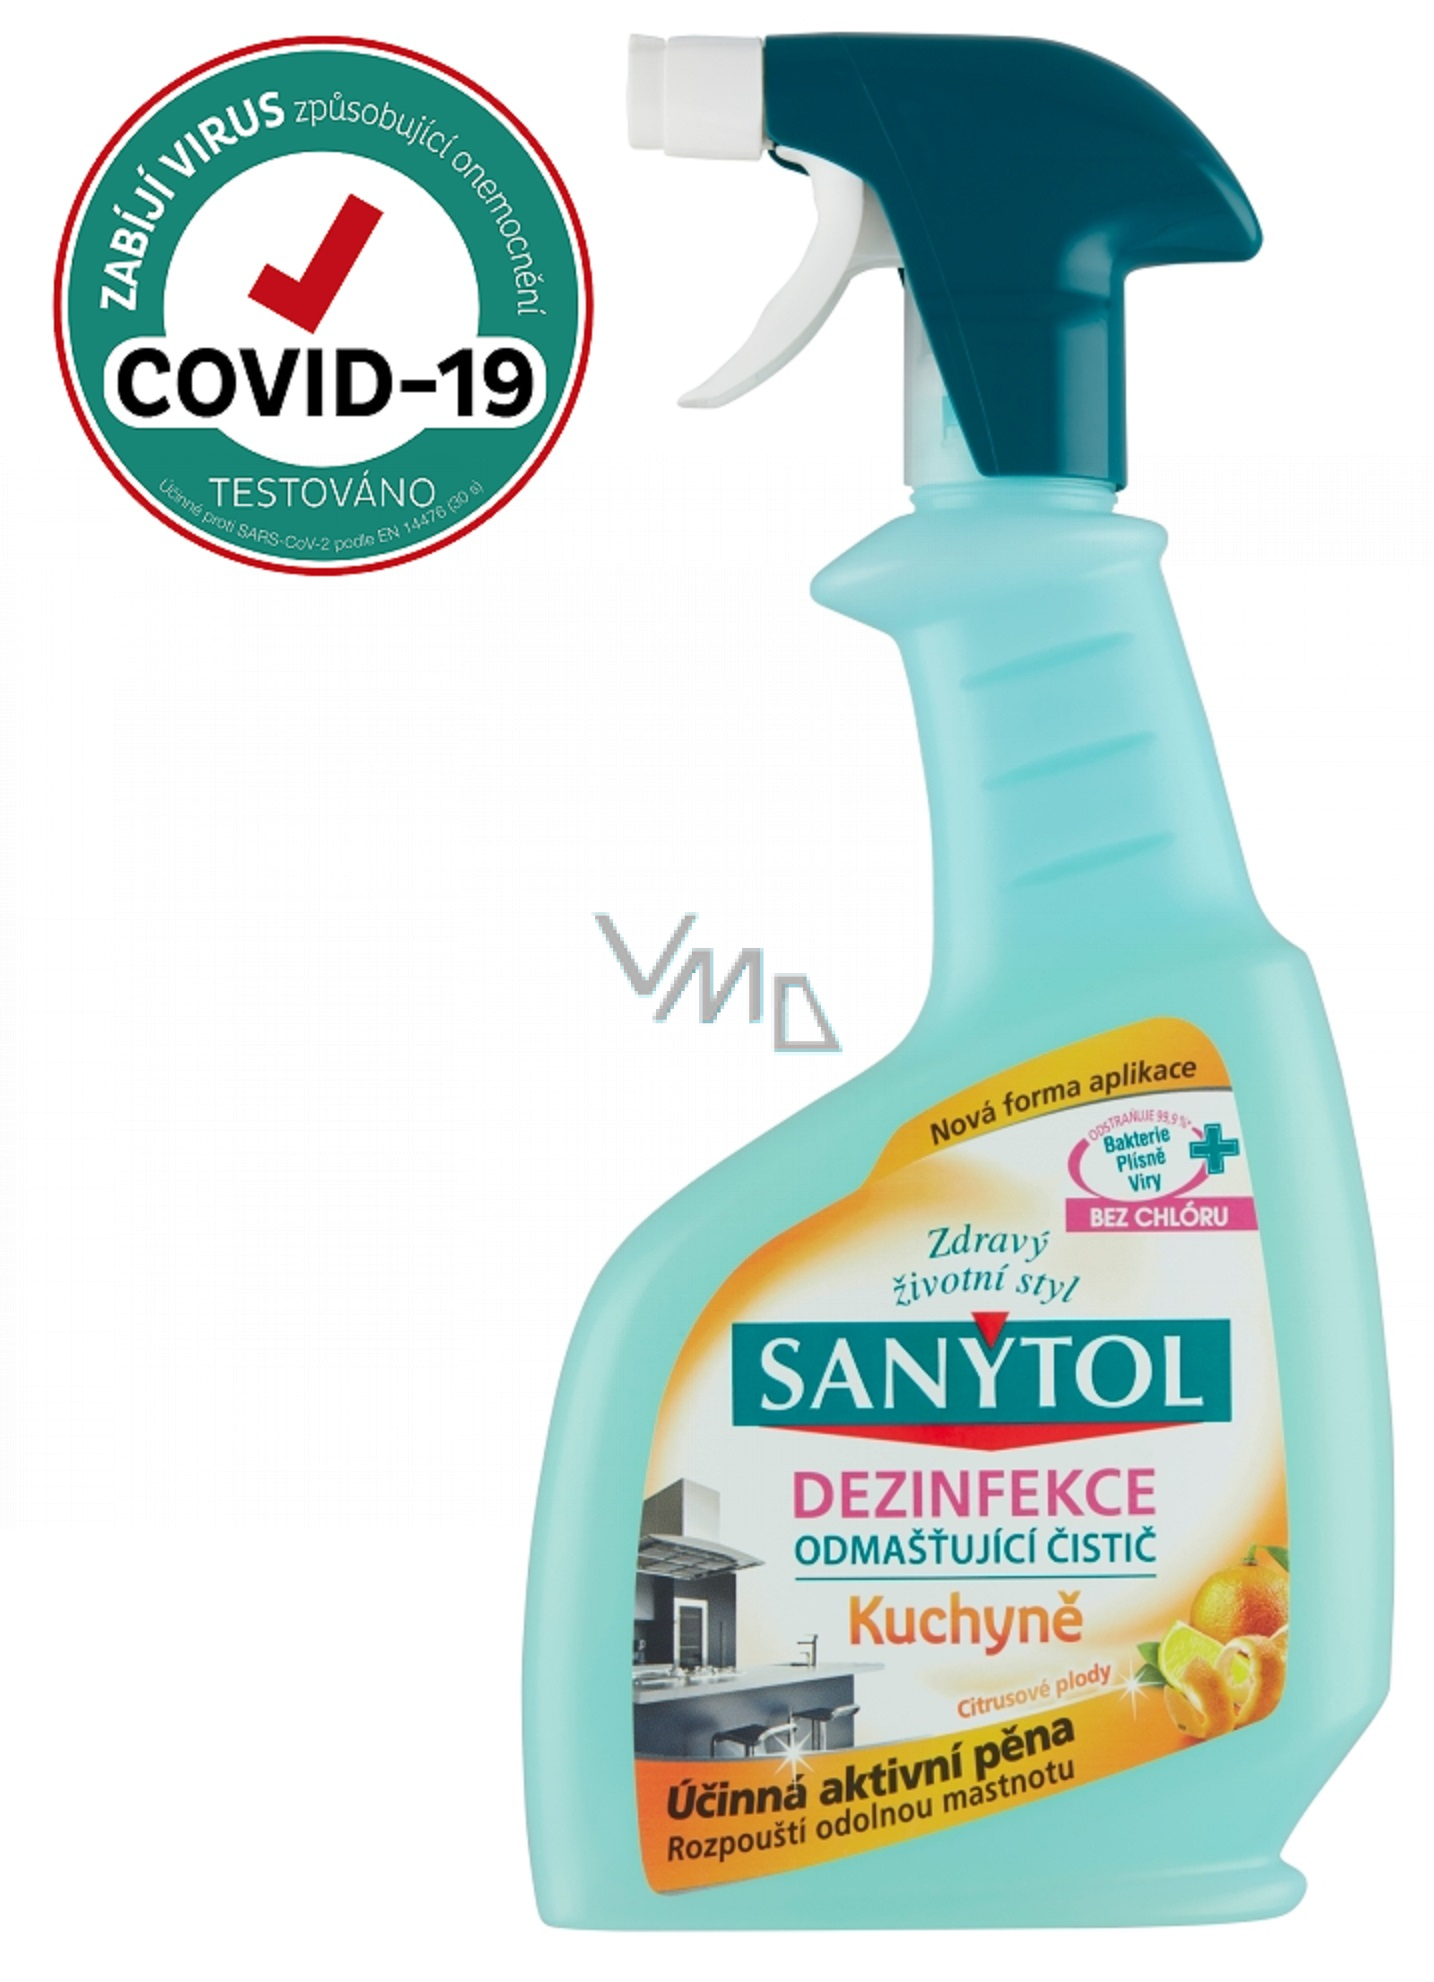 Sanytol Sanitizer Kitchen Spray 500ml